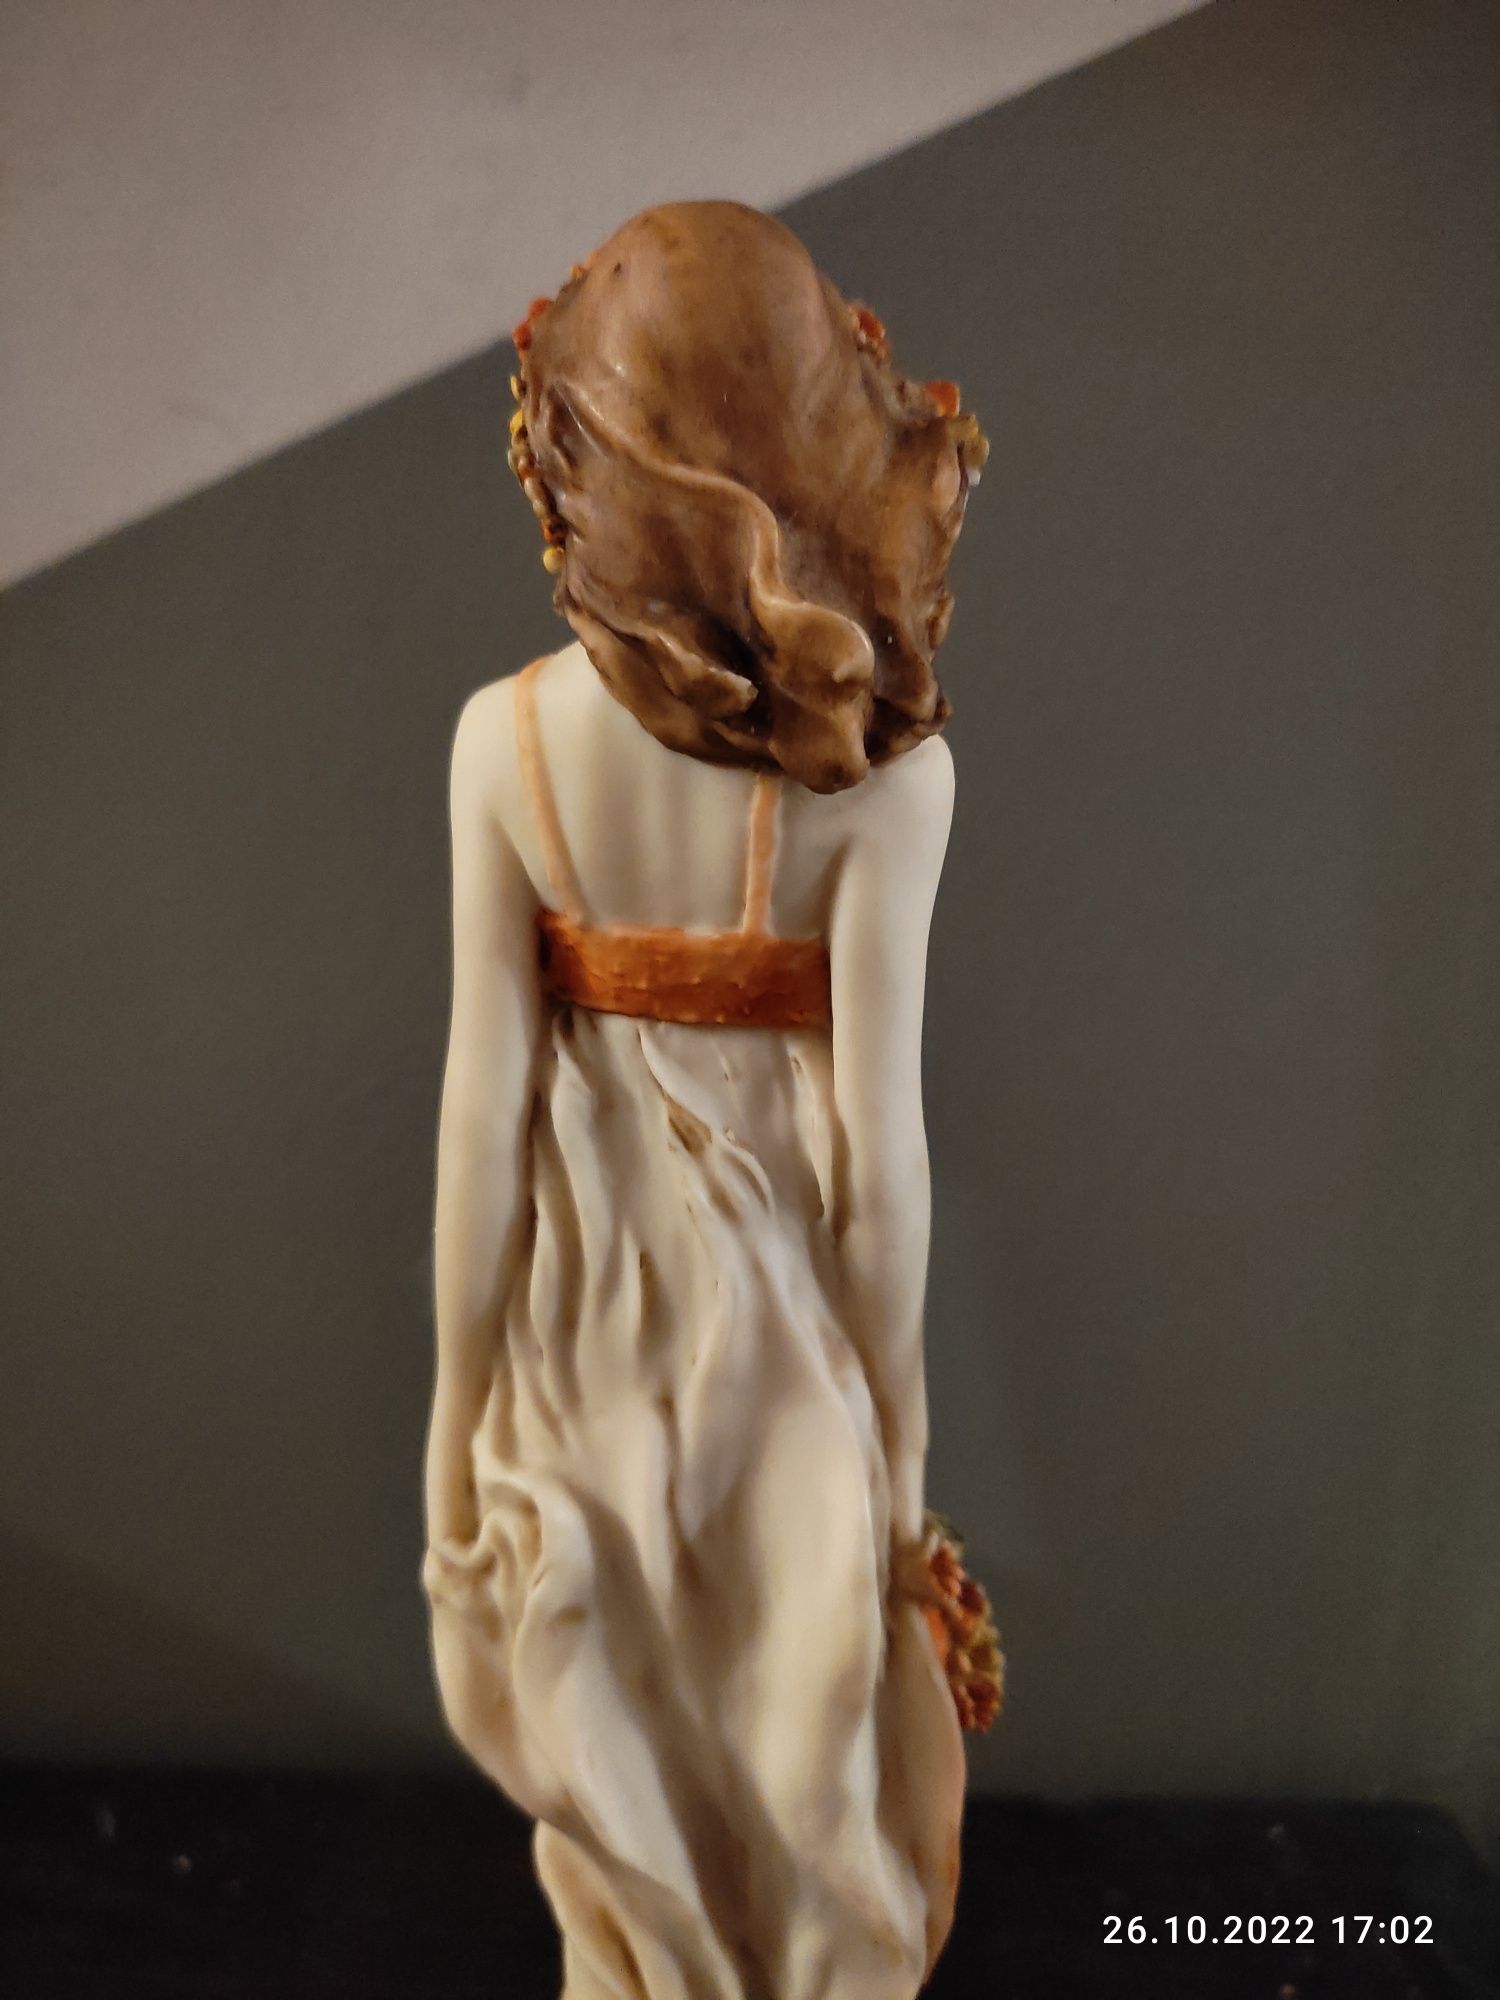 Piękna figurka kobiety porcelana sygnatura A.D.L adl Vittorio Tessaro